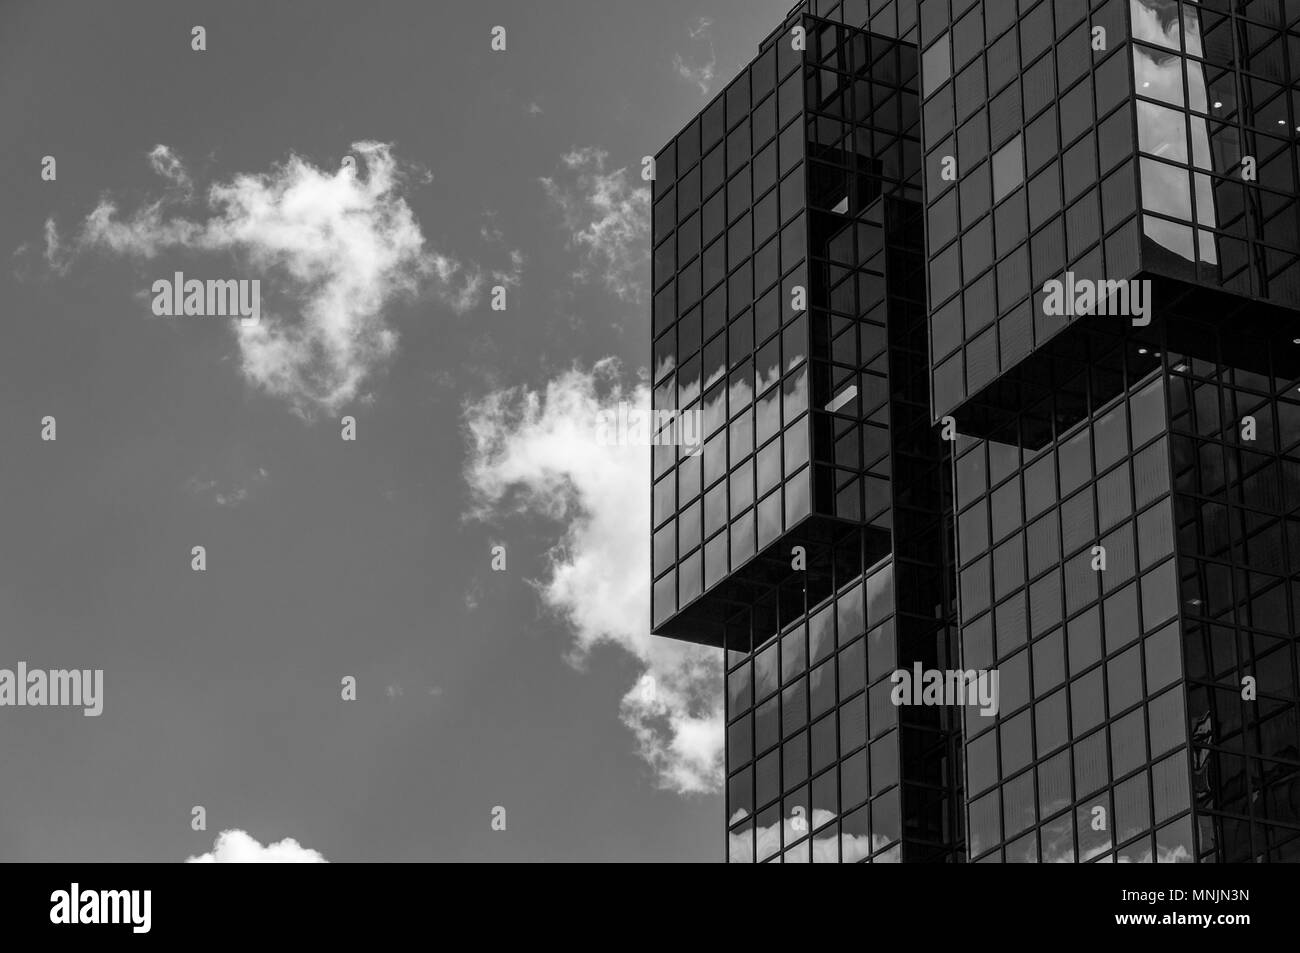 Imagen en blanco y negro, mirando hacia una nube reflejada en un moderno edificio de oficinas en Londres Foto de stock